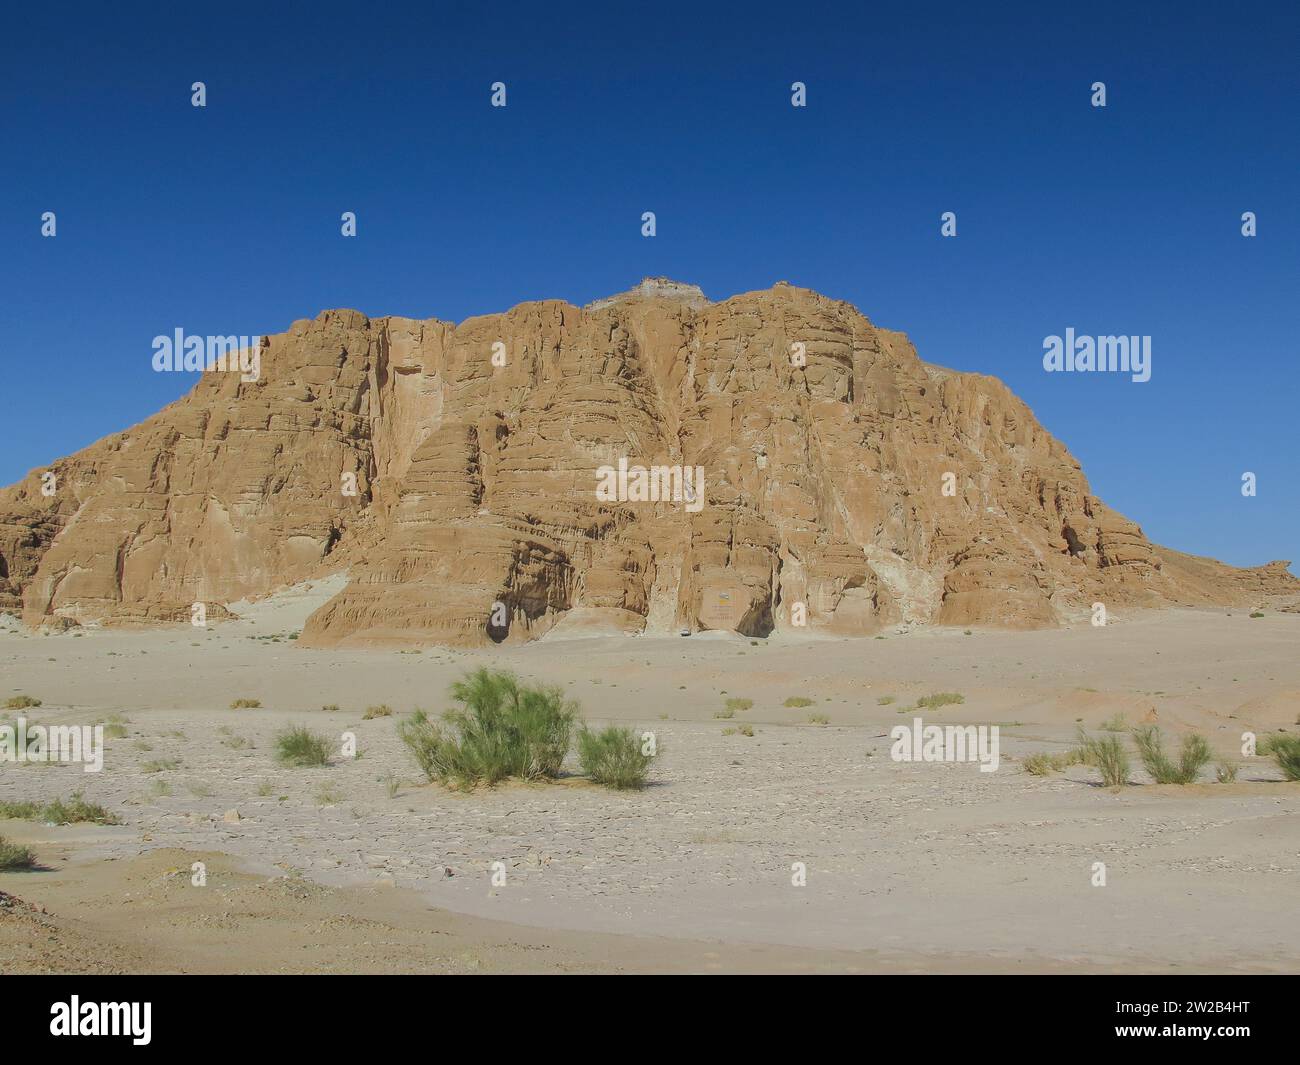 Erodierte Felsen, Berglandschaft im südlichen Sinai zwischen Ain Khudra und Nuwaiba, Ägypten Stockfoto